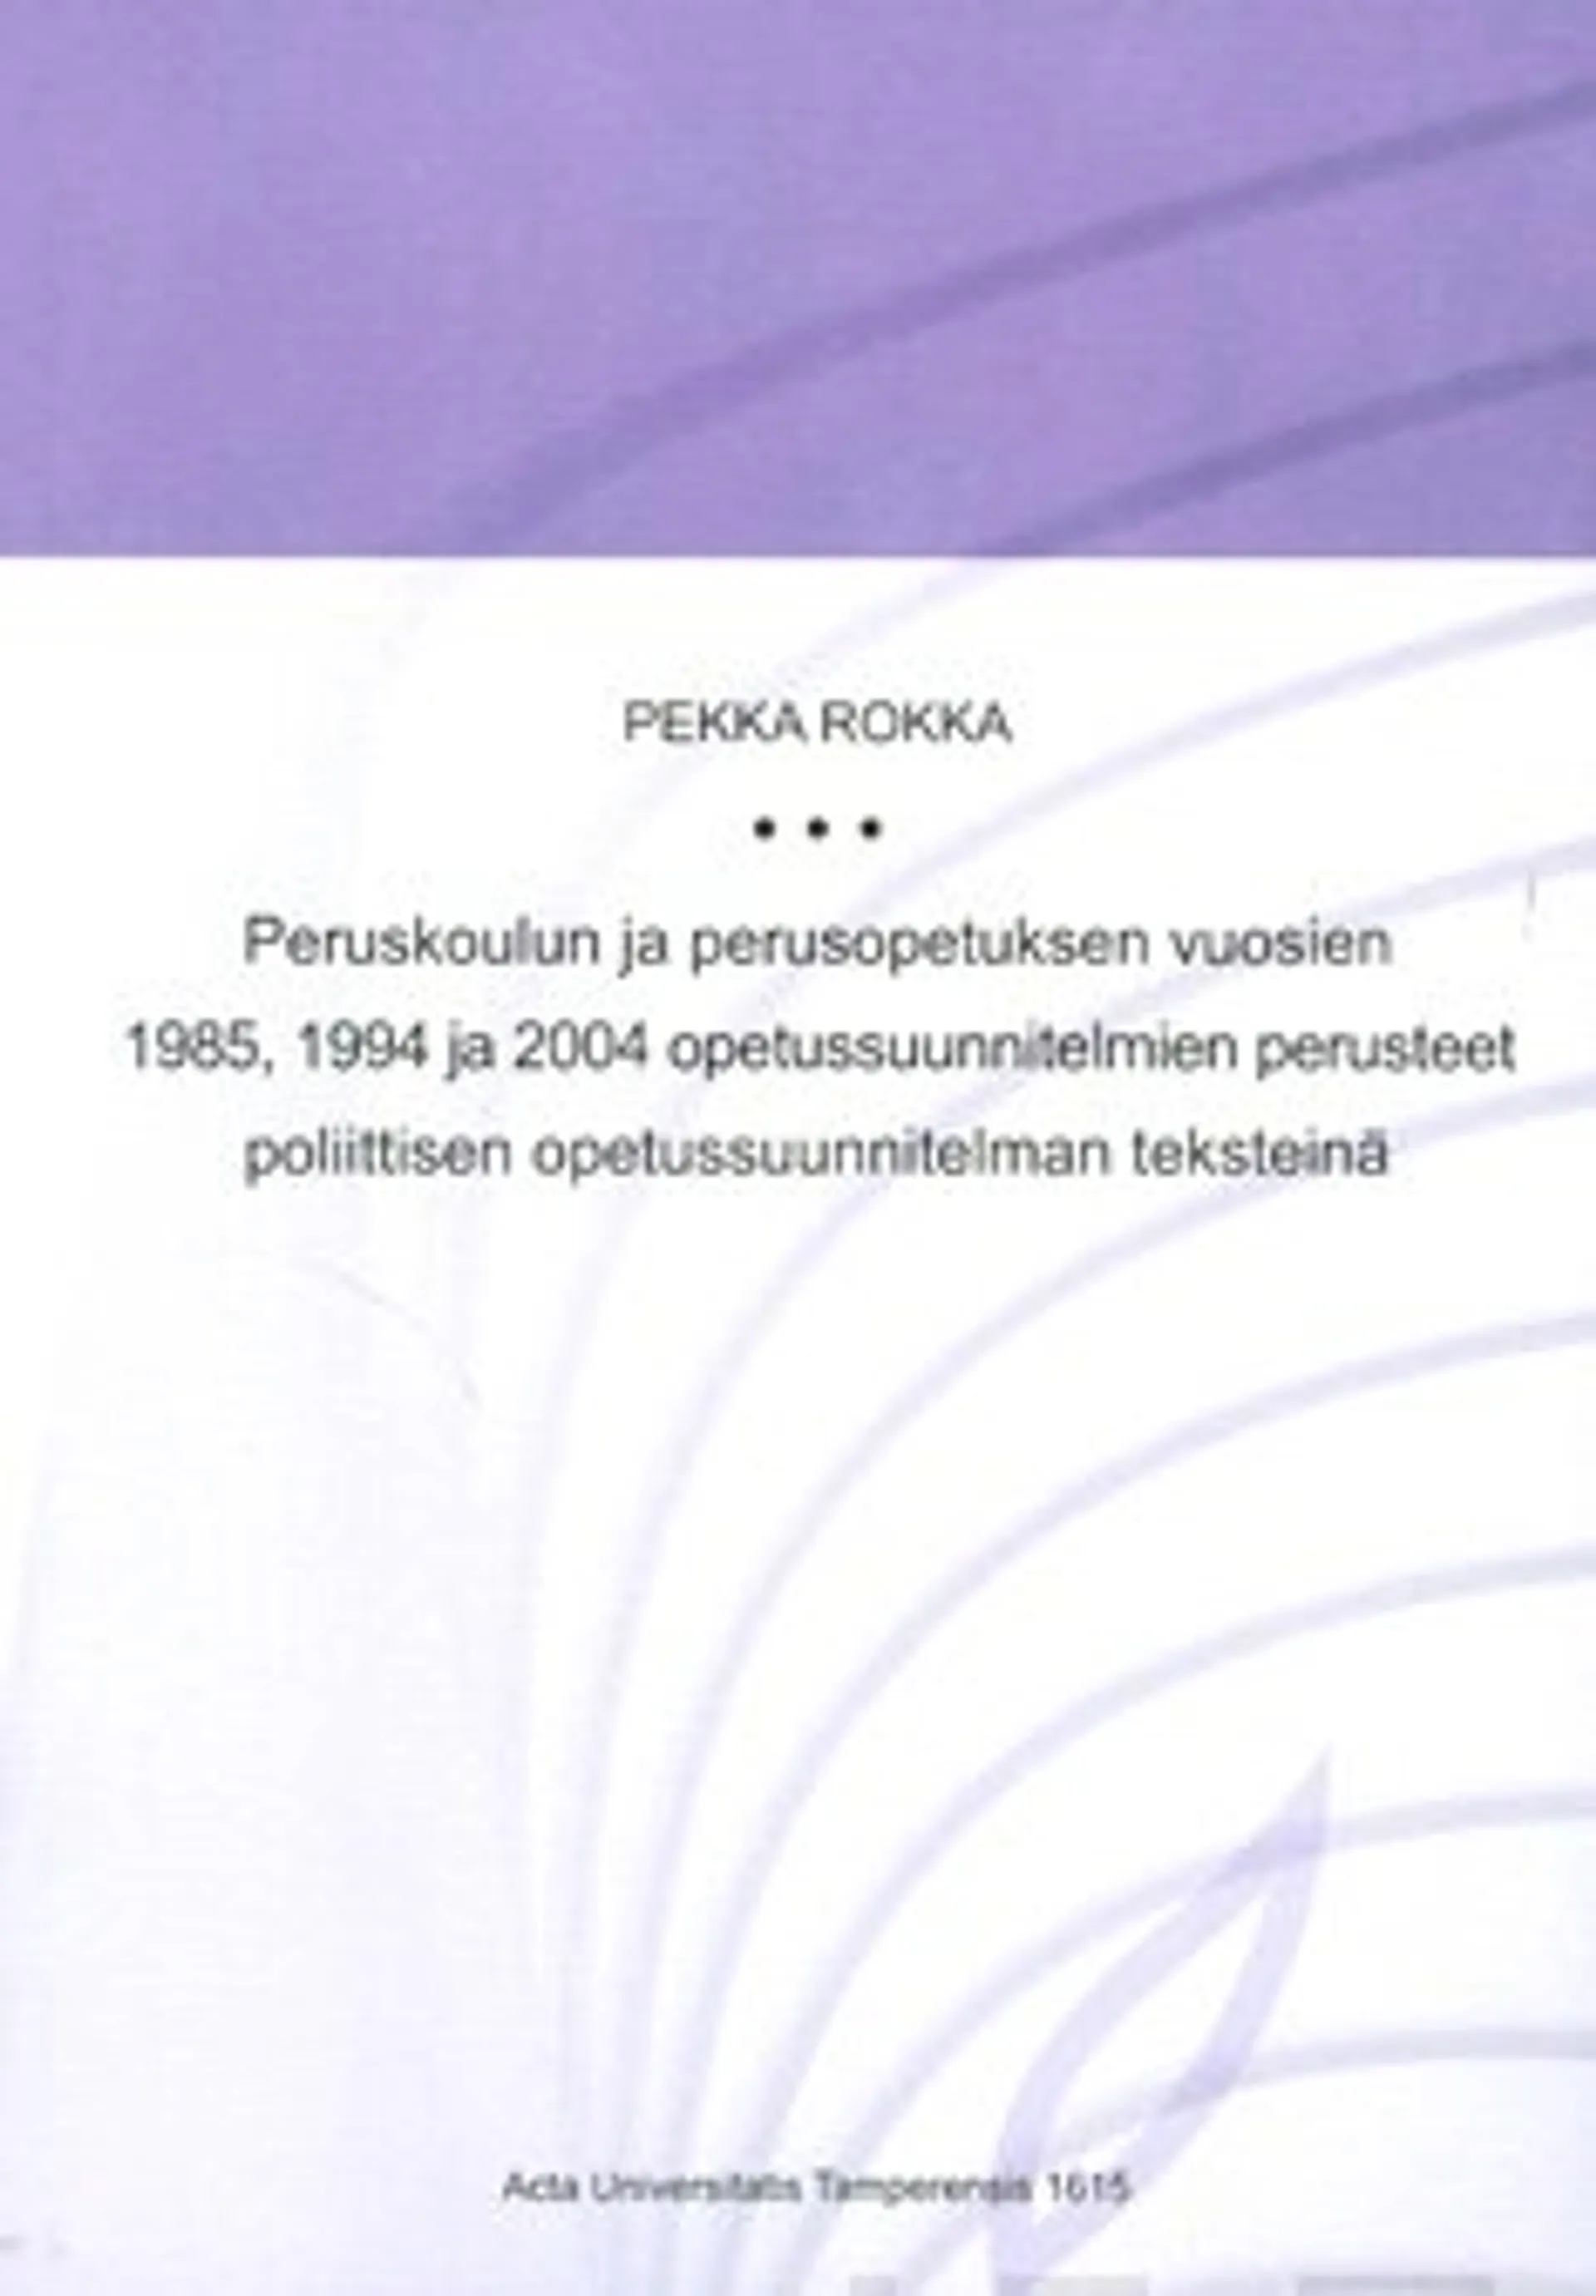 Peruskoulun ja perusopetuksen vuosien 1985, 1994 ja 2004 opetussunnitelmien perusteet poliittisen opetuussuunnitelman teksteinä